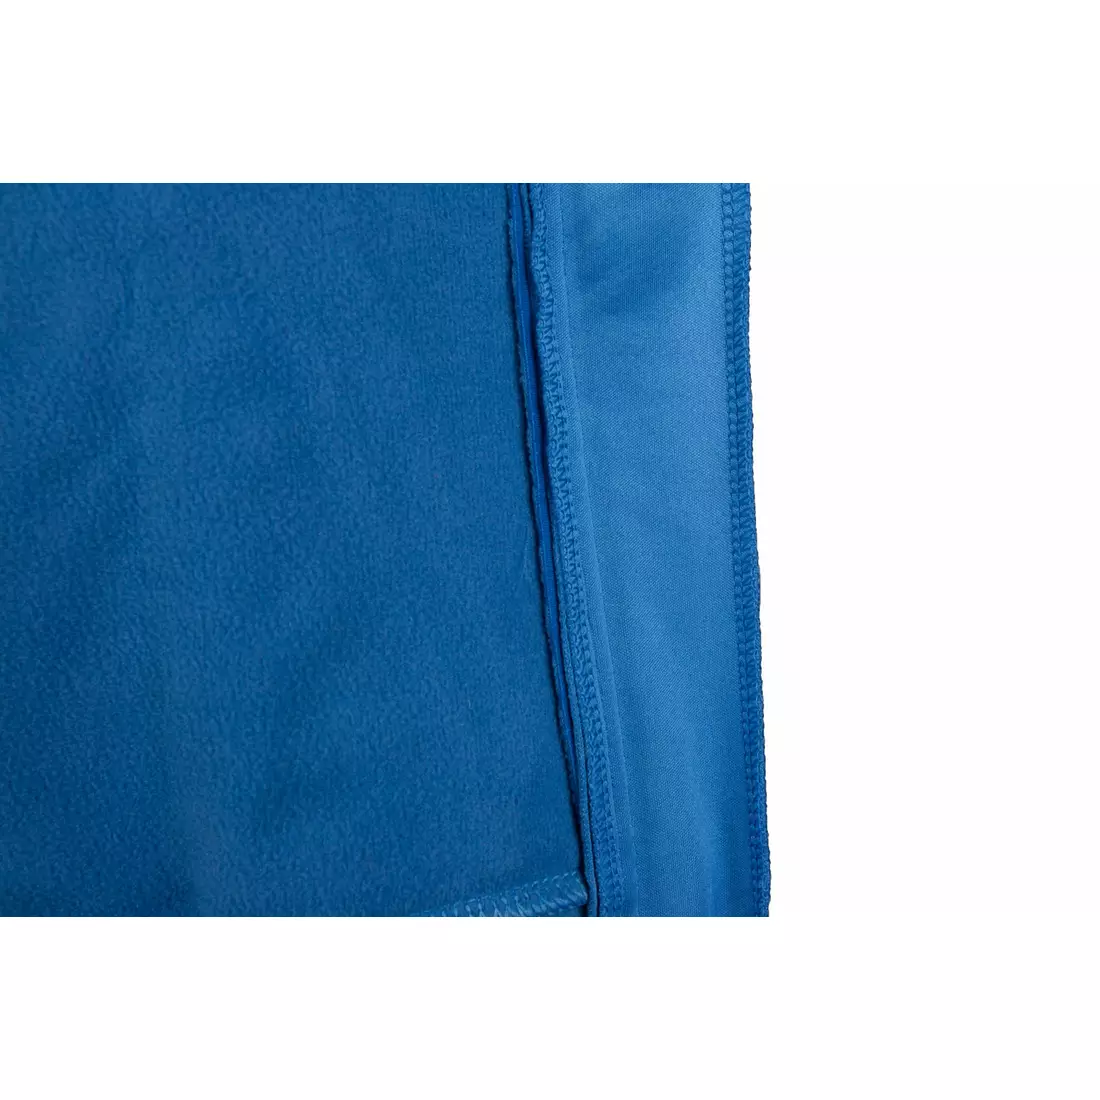 CROSSROAD ROCKFORD zimná cyklistická bunda, softshellová, modrá